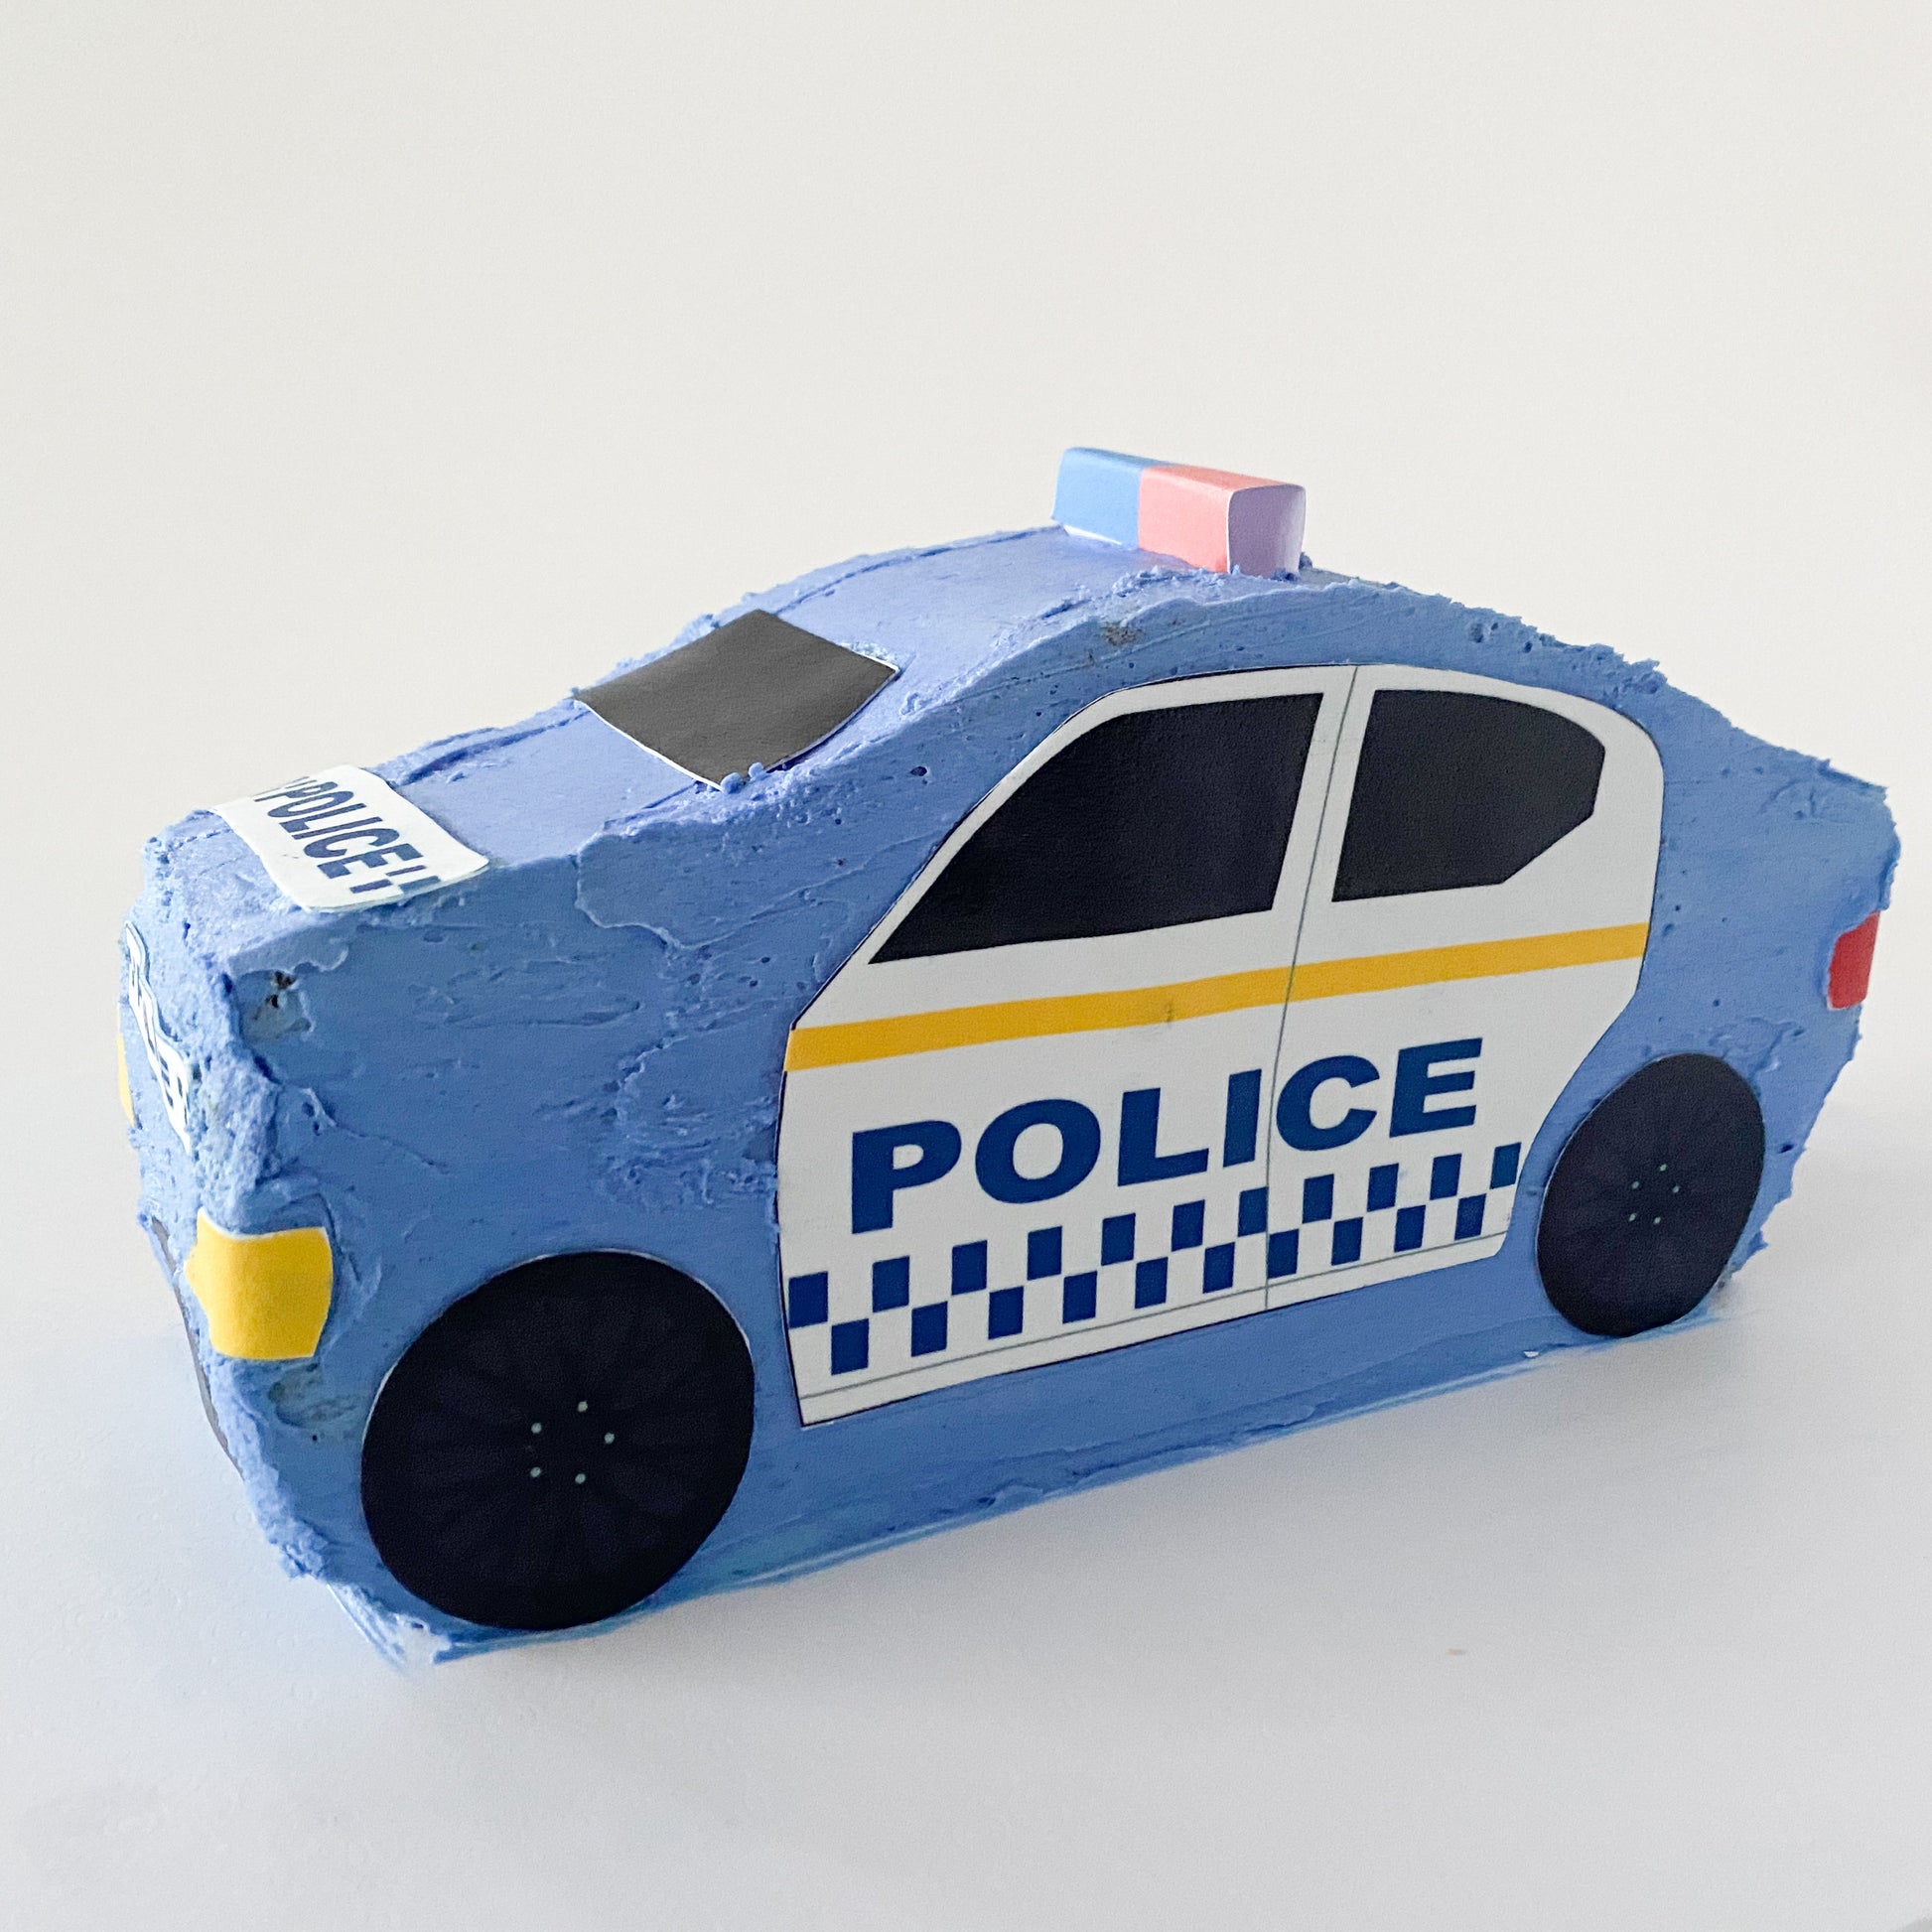 Police Car Cake Kit